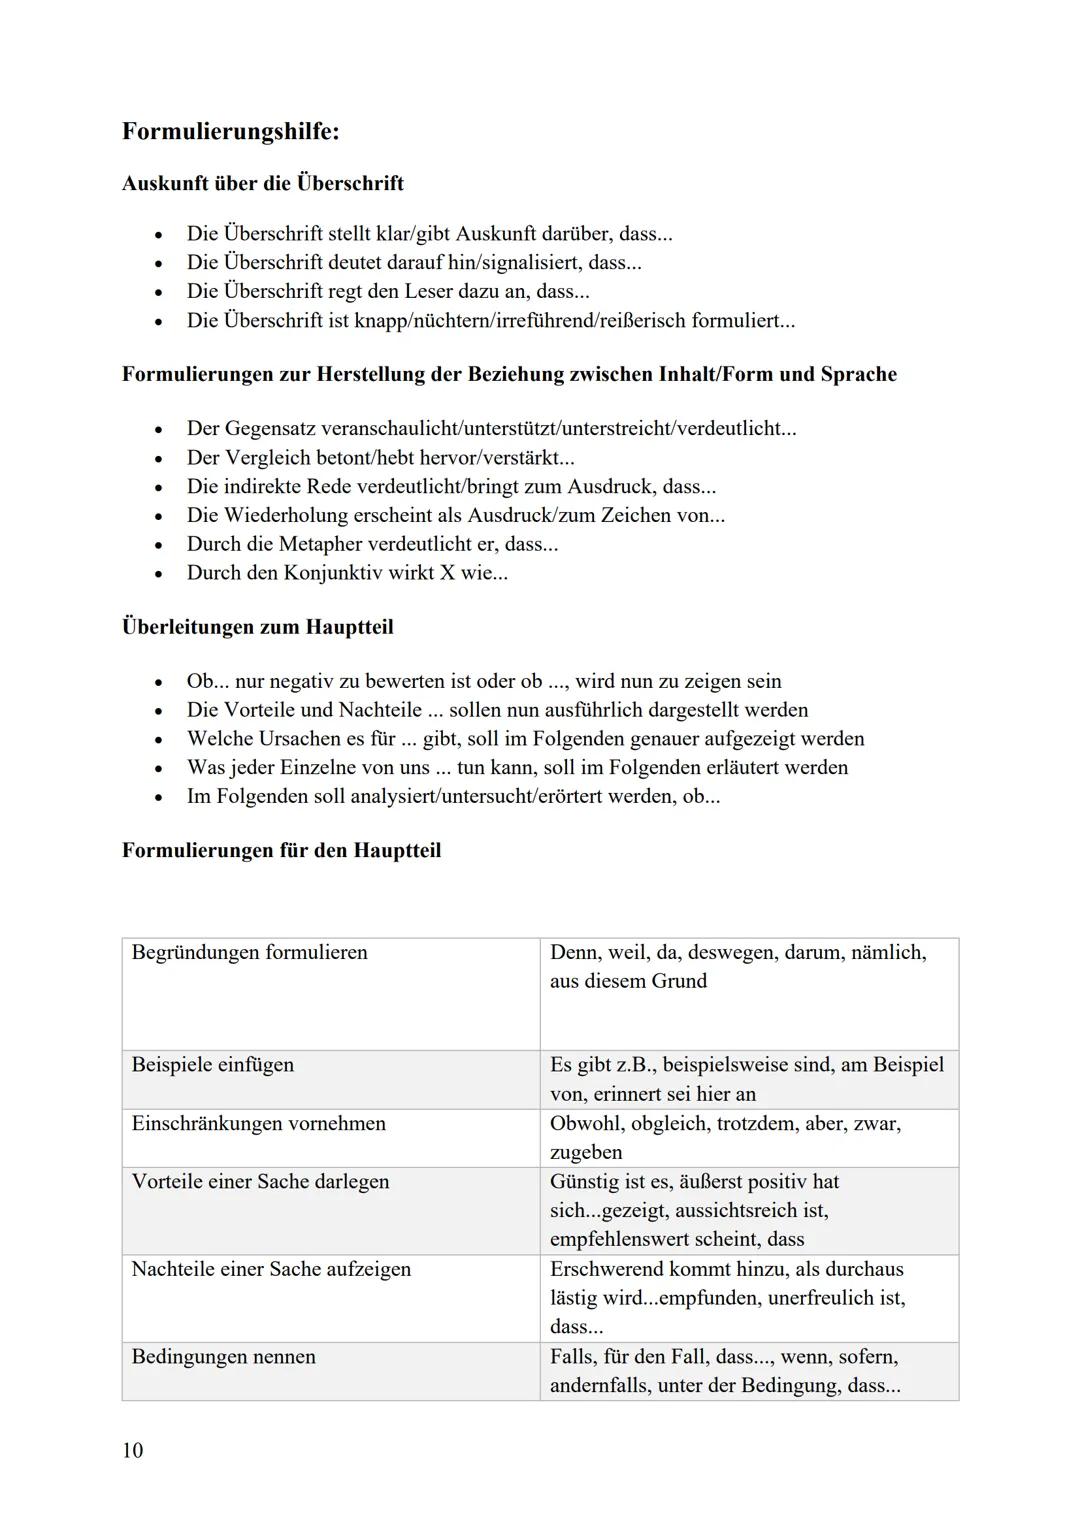 Berufliches Gymnasium Abitur Deutsch
Aufgabentyp
Analyse und Erörterung eines pragmatischen Textes
Hinweis zum Aufgabentyp
Der Aufgabe liegt